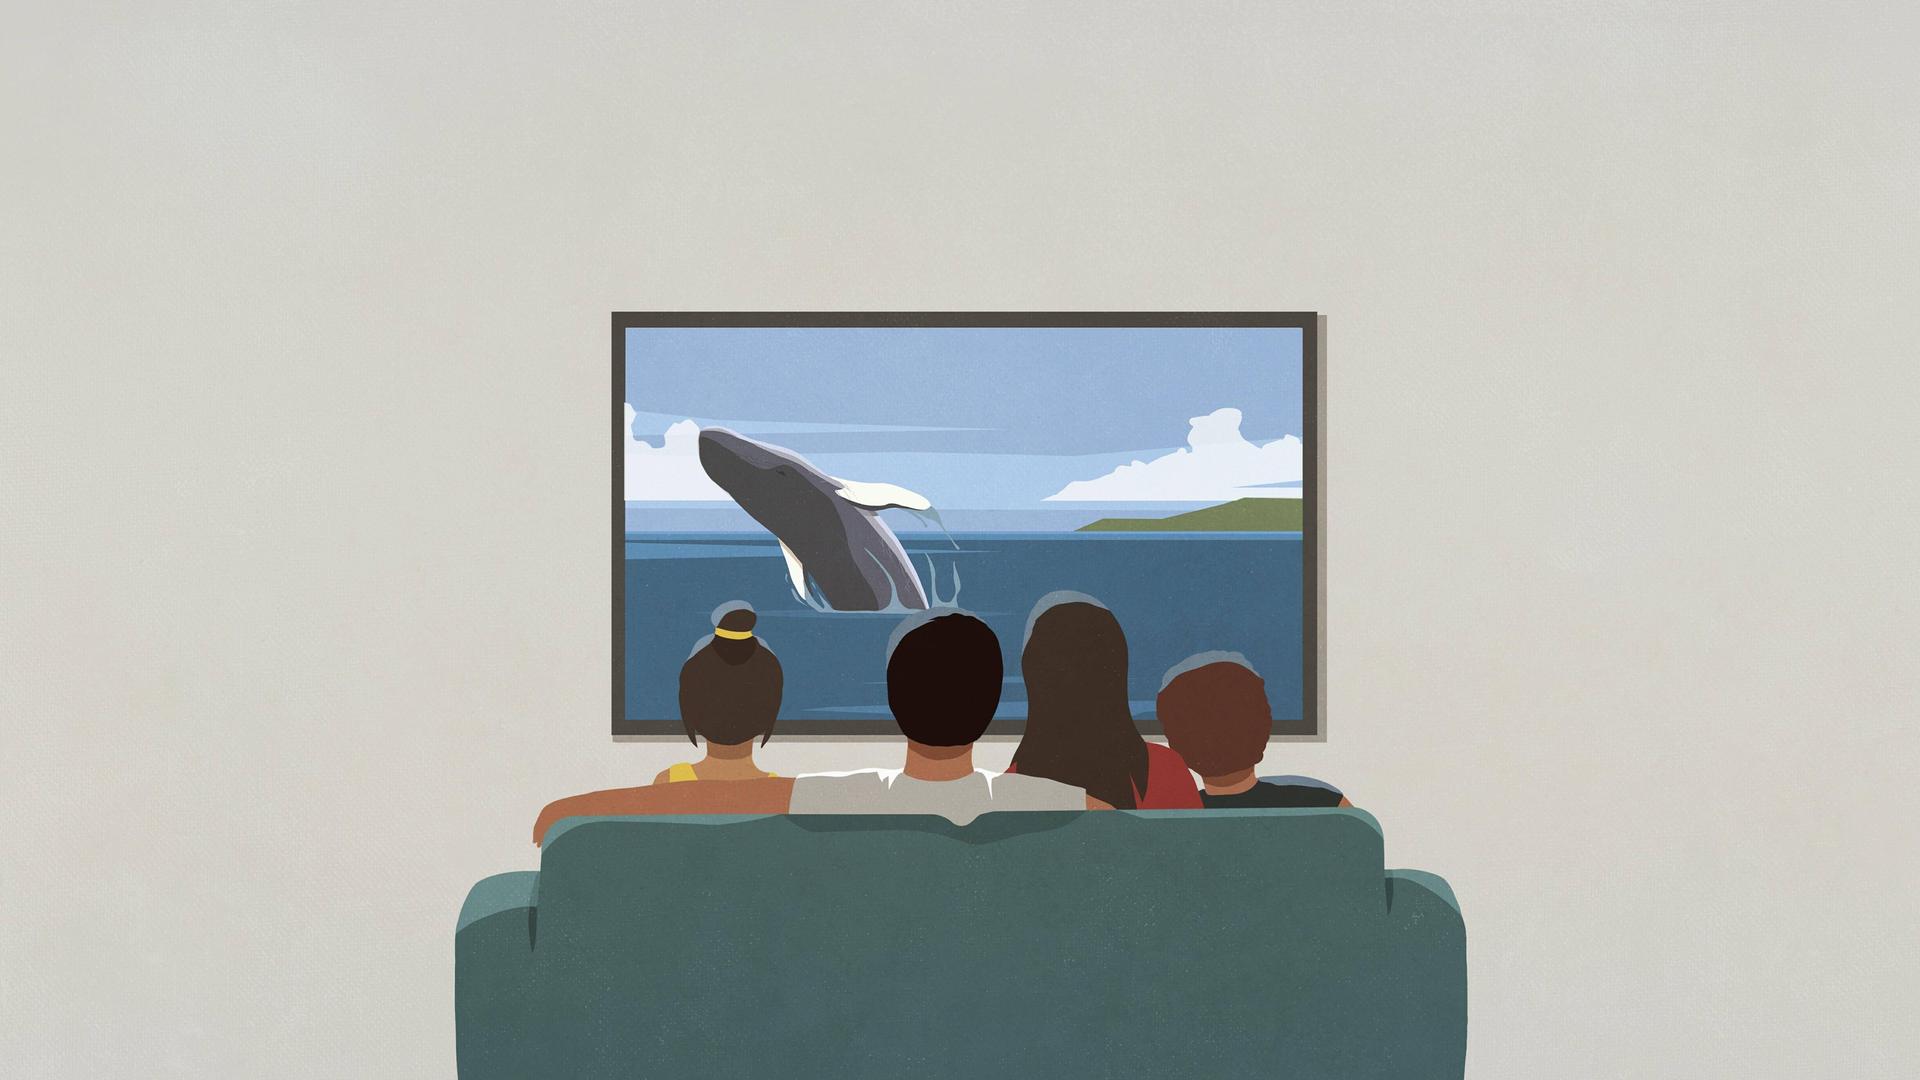 Illustration: Eine Familie sitzt auf einem Sofa und schaut auf einen Fernsehbildschirm, auf dem ein Wal zu sehen ist.